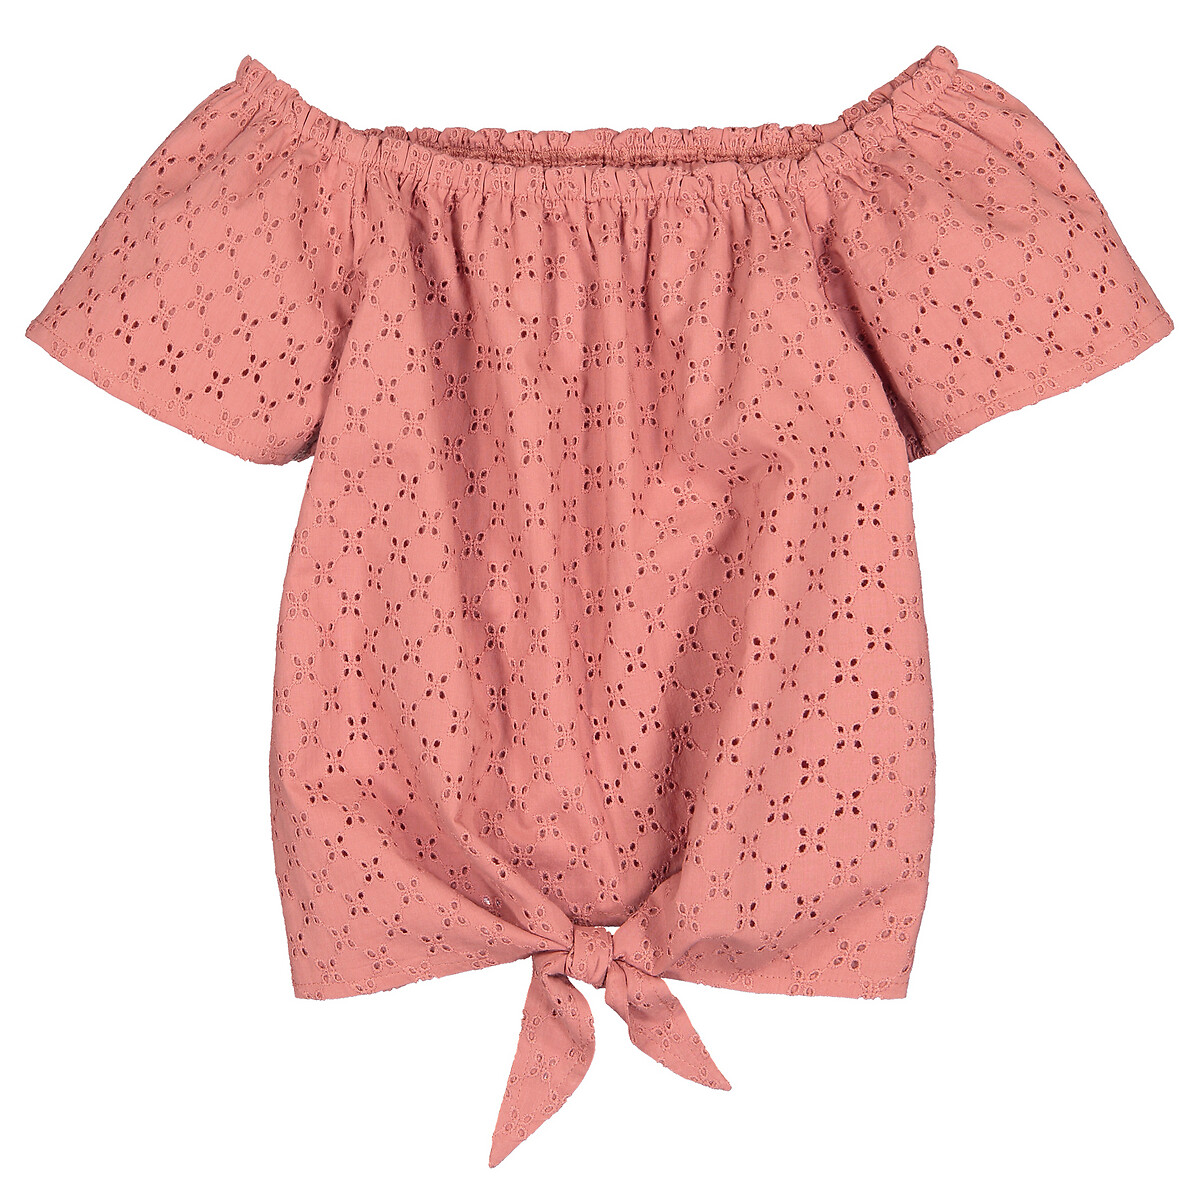 Блузка La Redoute С английской вышивкой  5 лет - 108 см розовый, размер 5